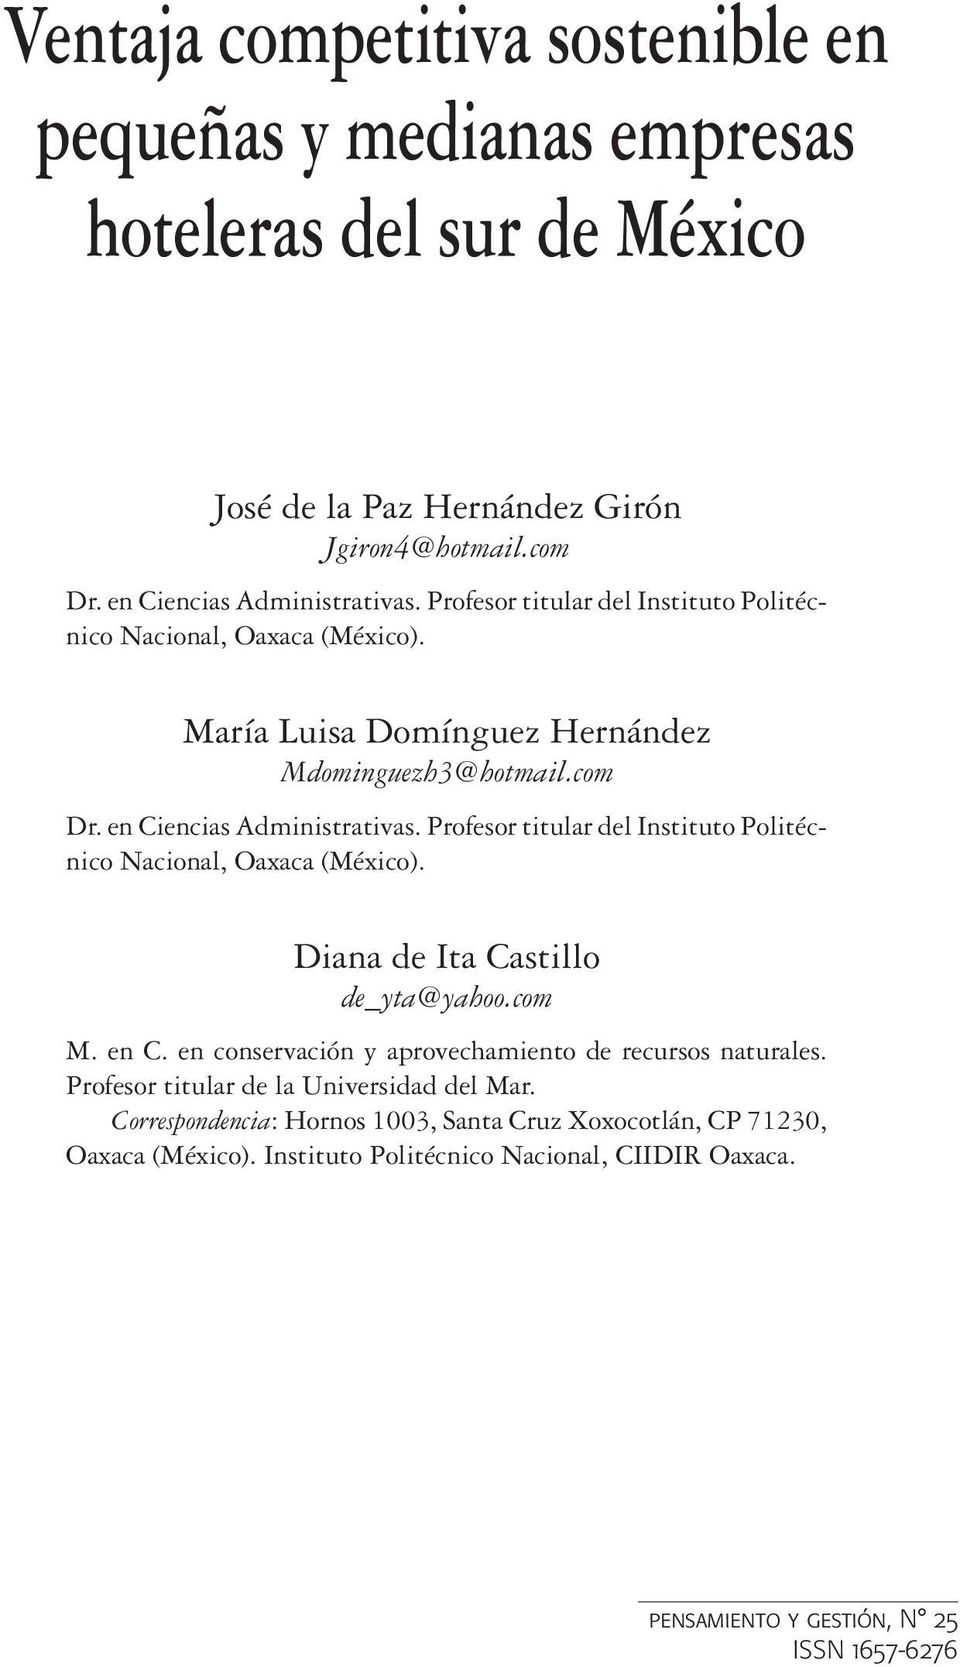 Profesor titular del Instituto Politécnico Nacional, Oaxaca (México). Diana de Ita Castillo de_yta@yahoo.com M. en C. en conservación y aprovechamiento de recursos naturales.